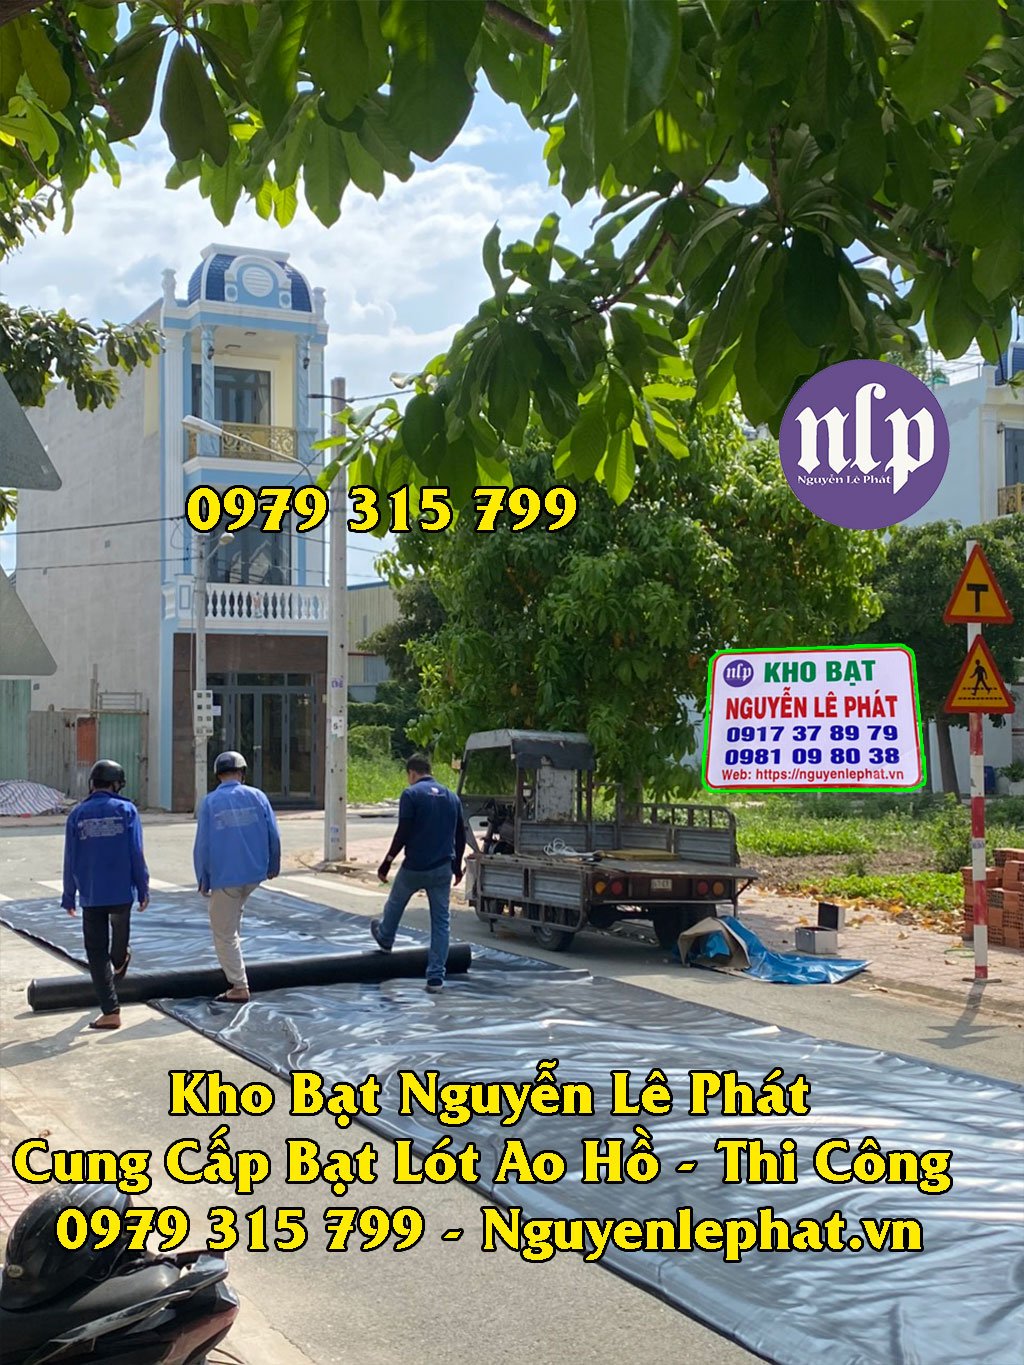 Bạt lót hồ nuôi tôm Bình Thuận